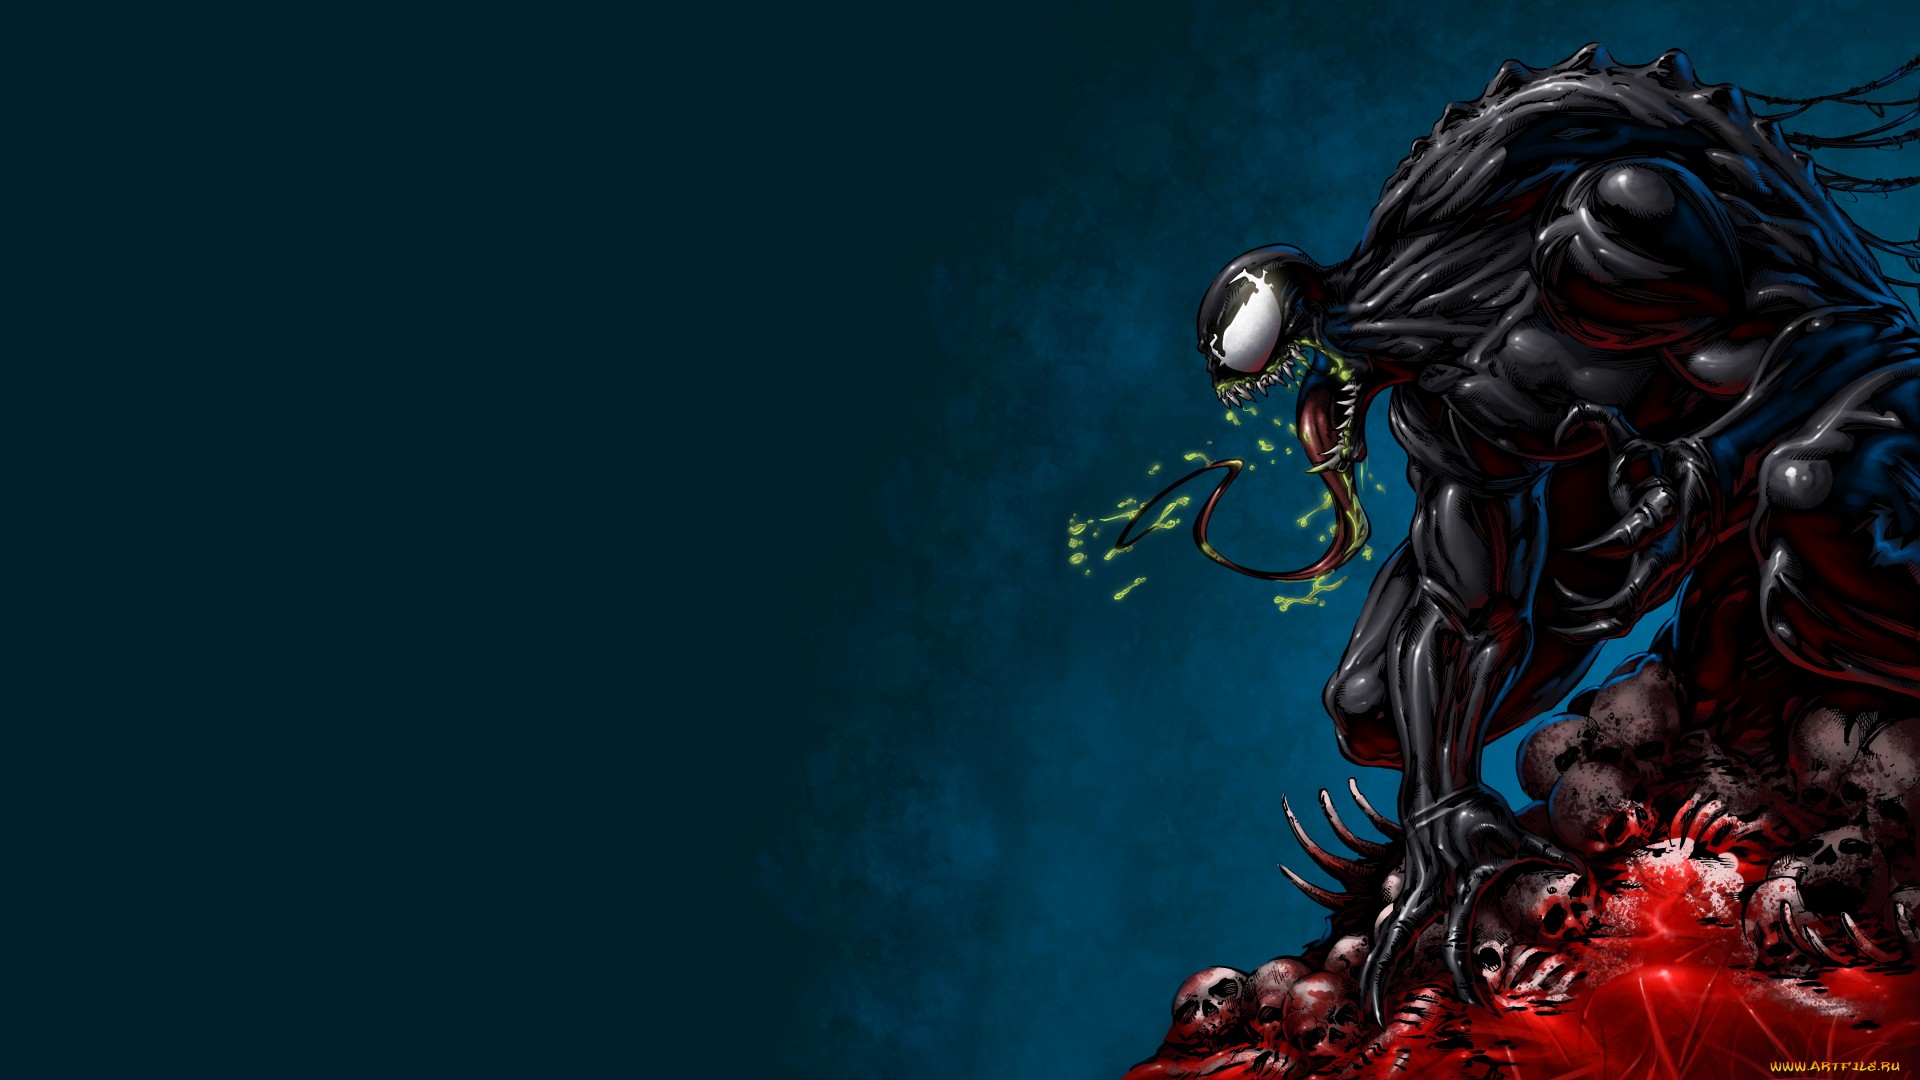 Venom Background - HD Wallpaper 